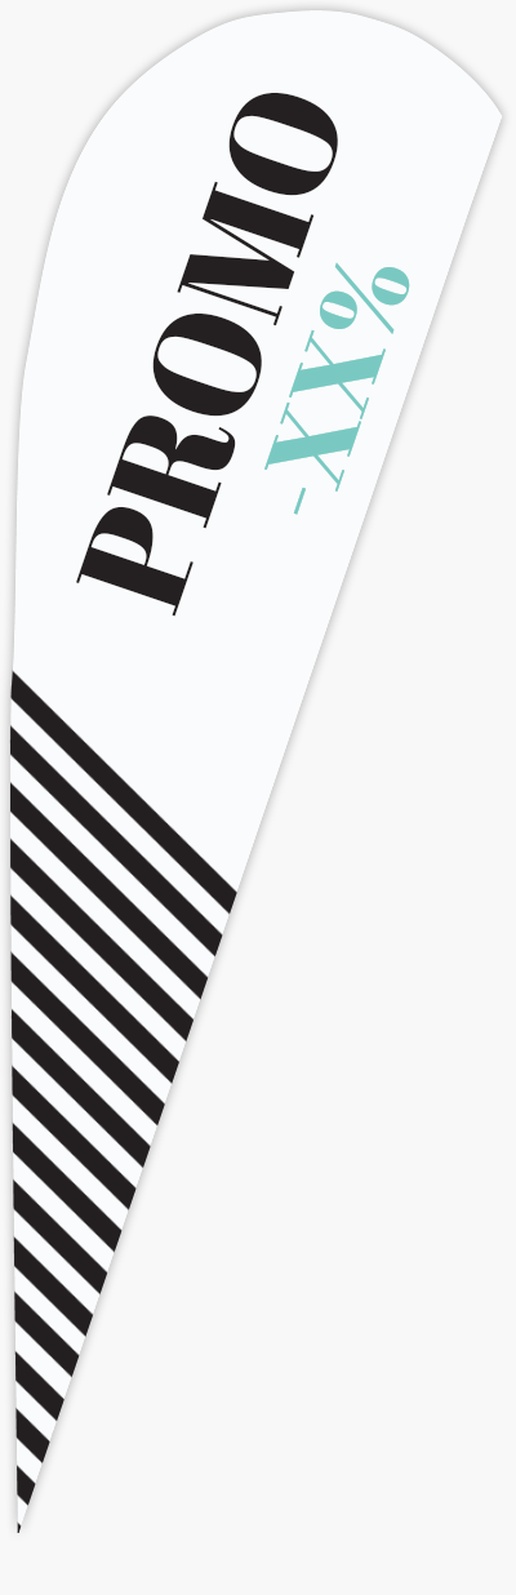 Aperçu du graphisme pour Galerie de modèles : drapeaux plume pour chaussures, Goutte d’eau 2,8 m 